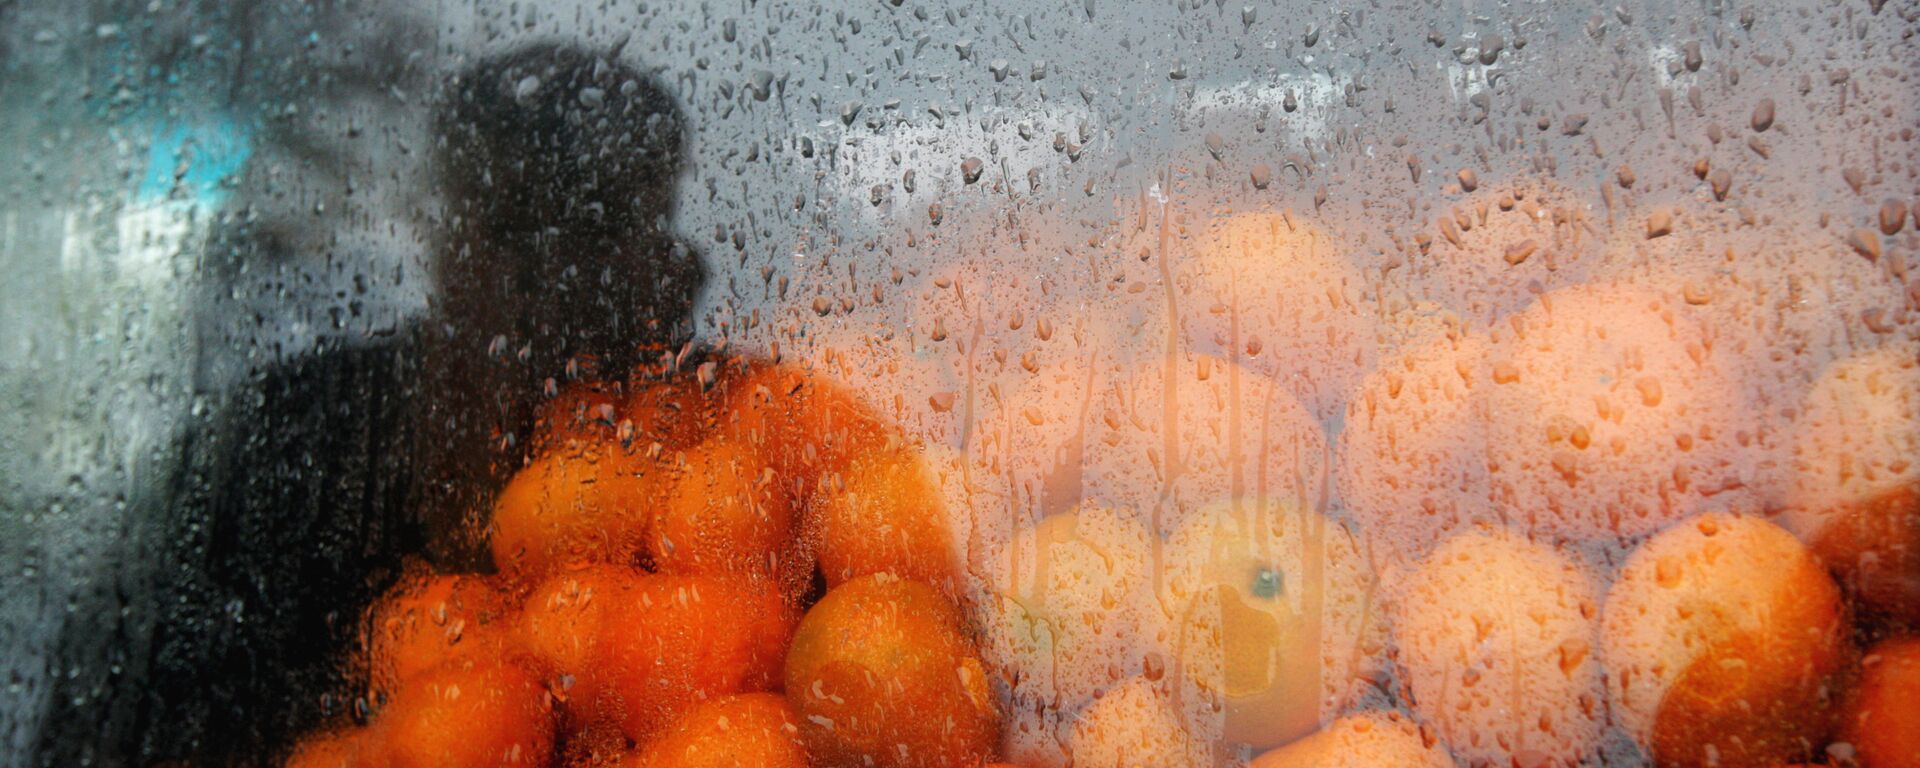 Торговцец мандаринами на оптовом рынке в Абхазии близ КПП Псоу недалеко от границы с Россией - Sputnik Грузия, 1920, 04.11.2021